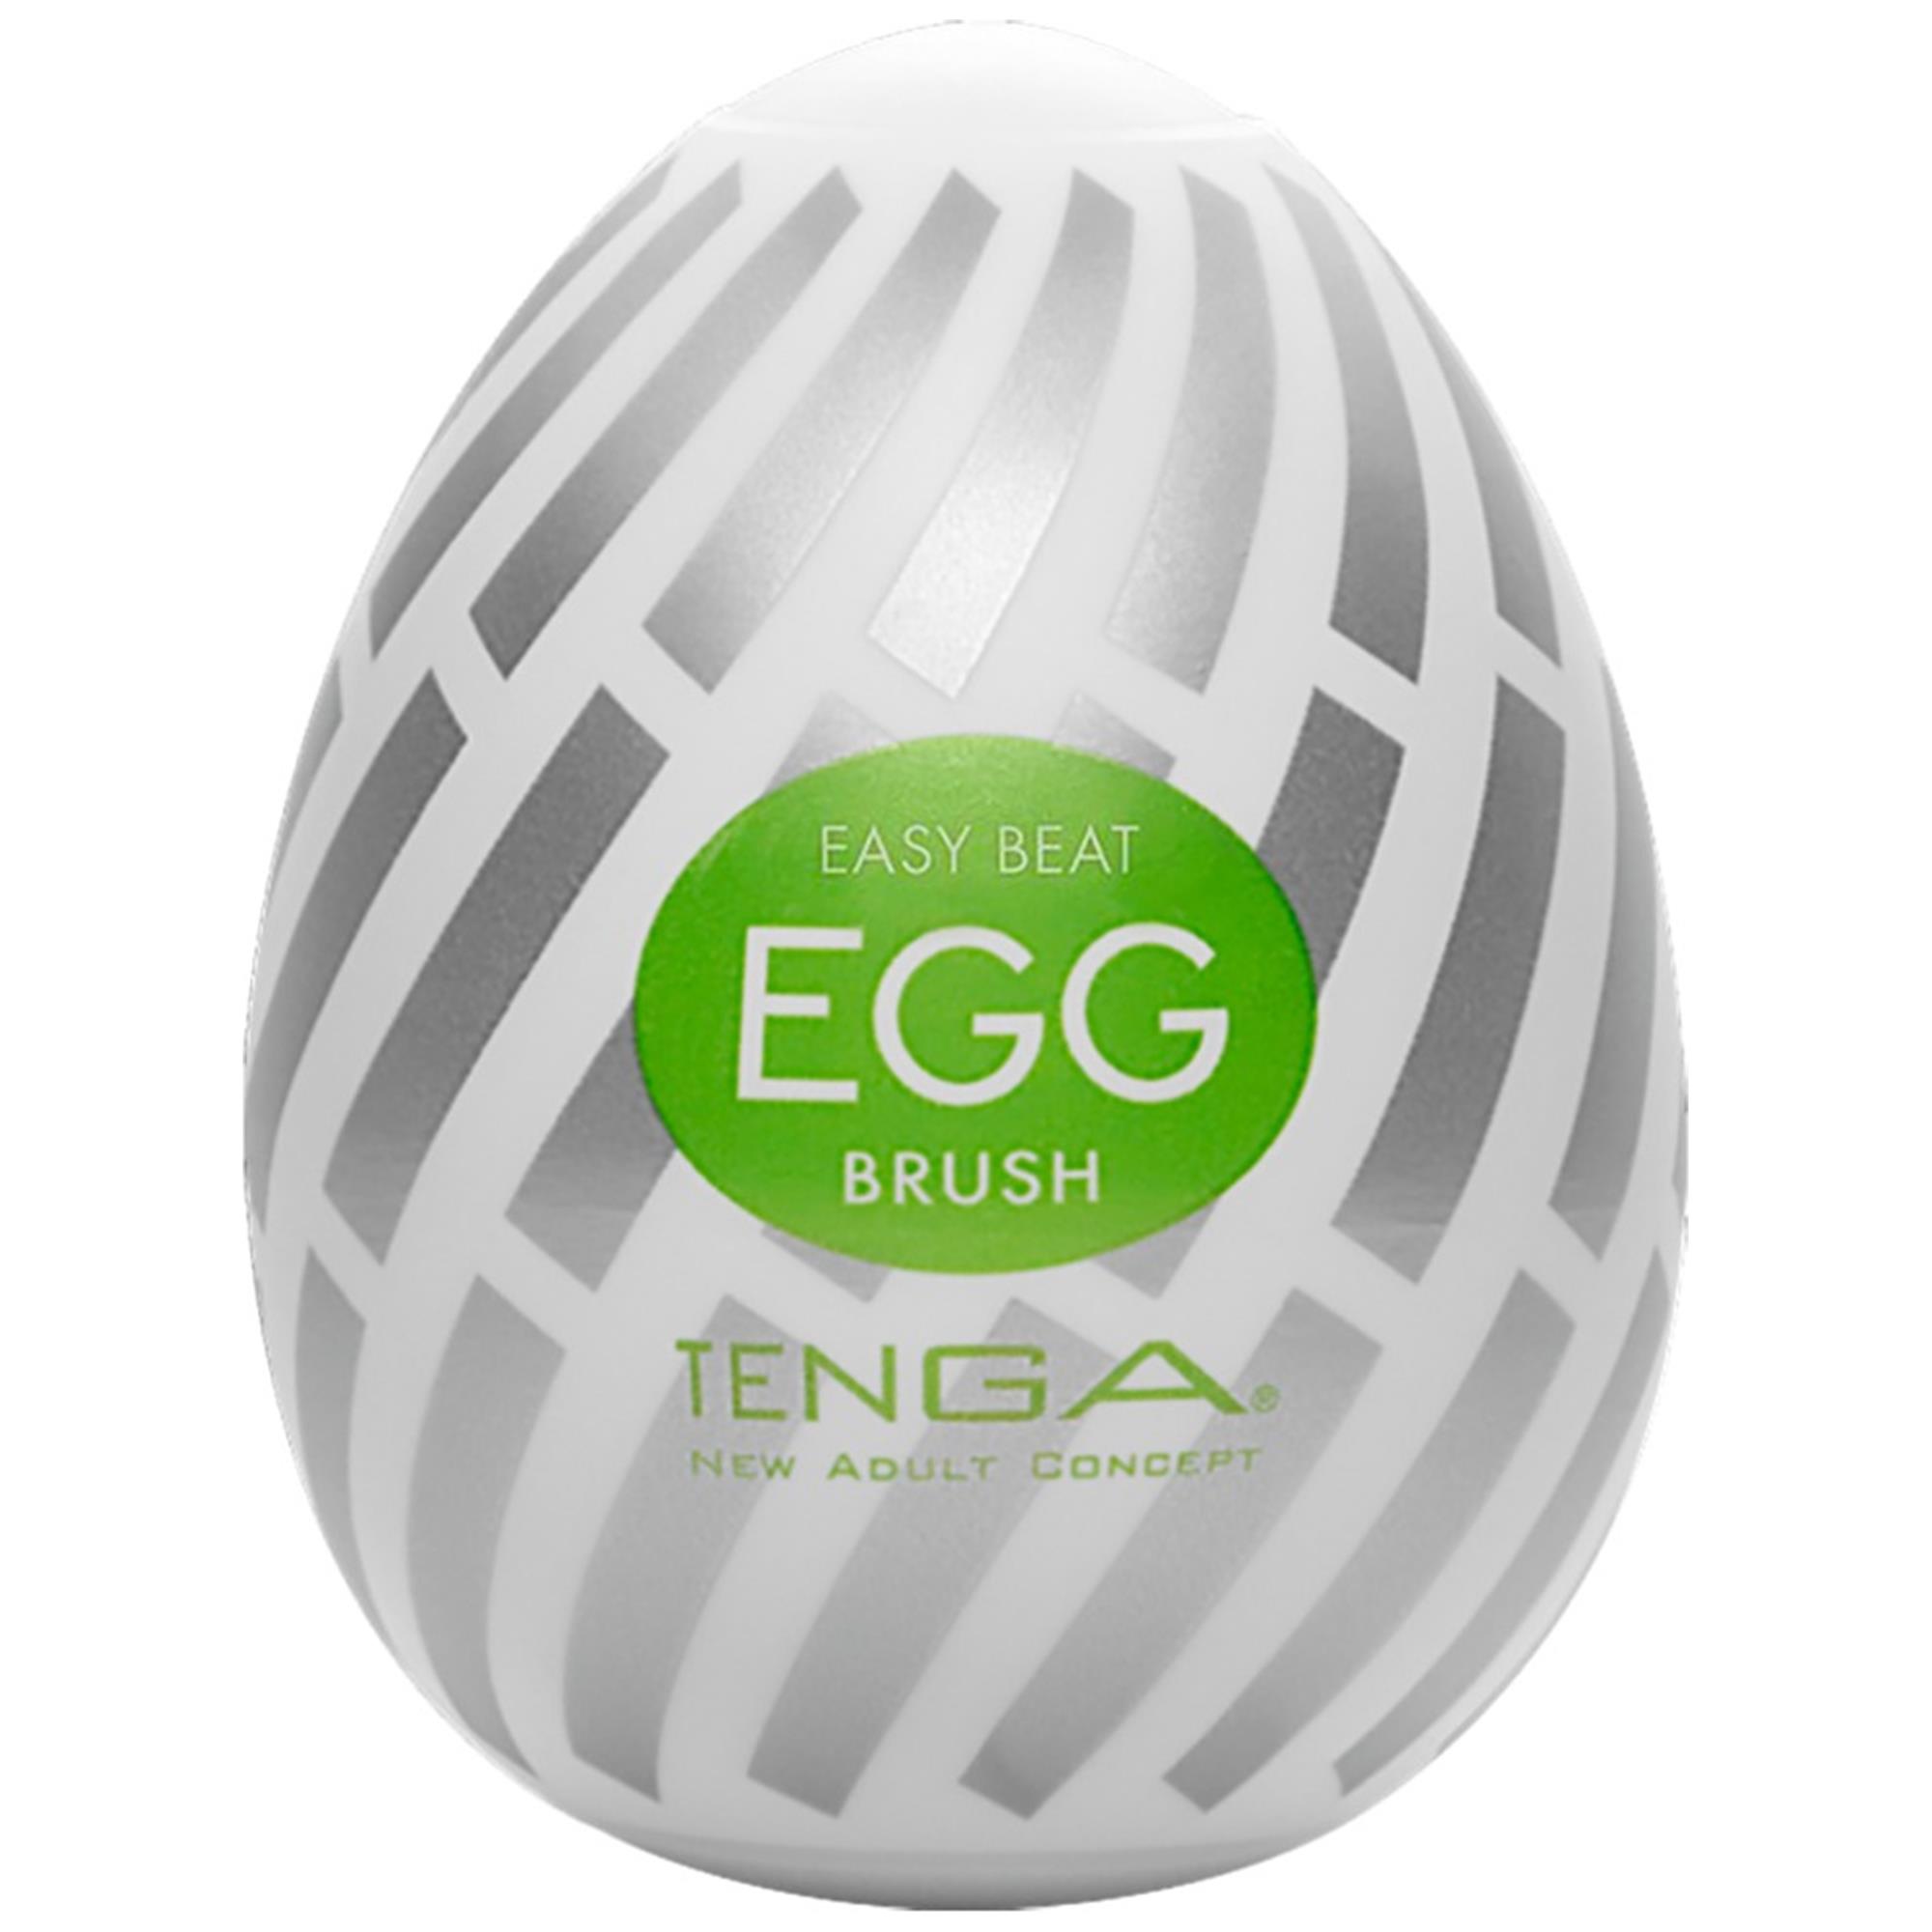 Tenga Egg Brush